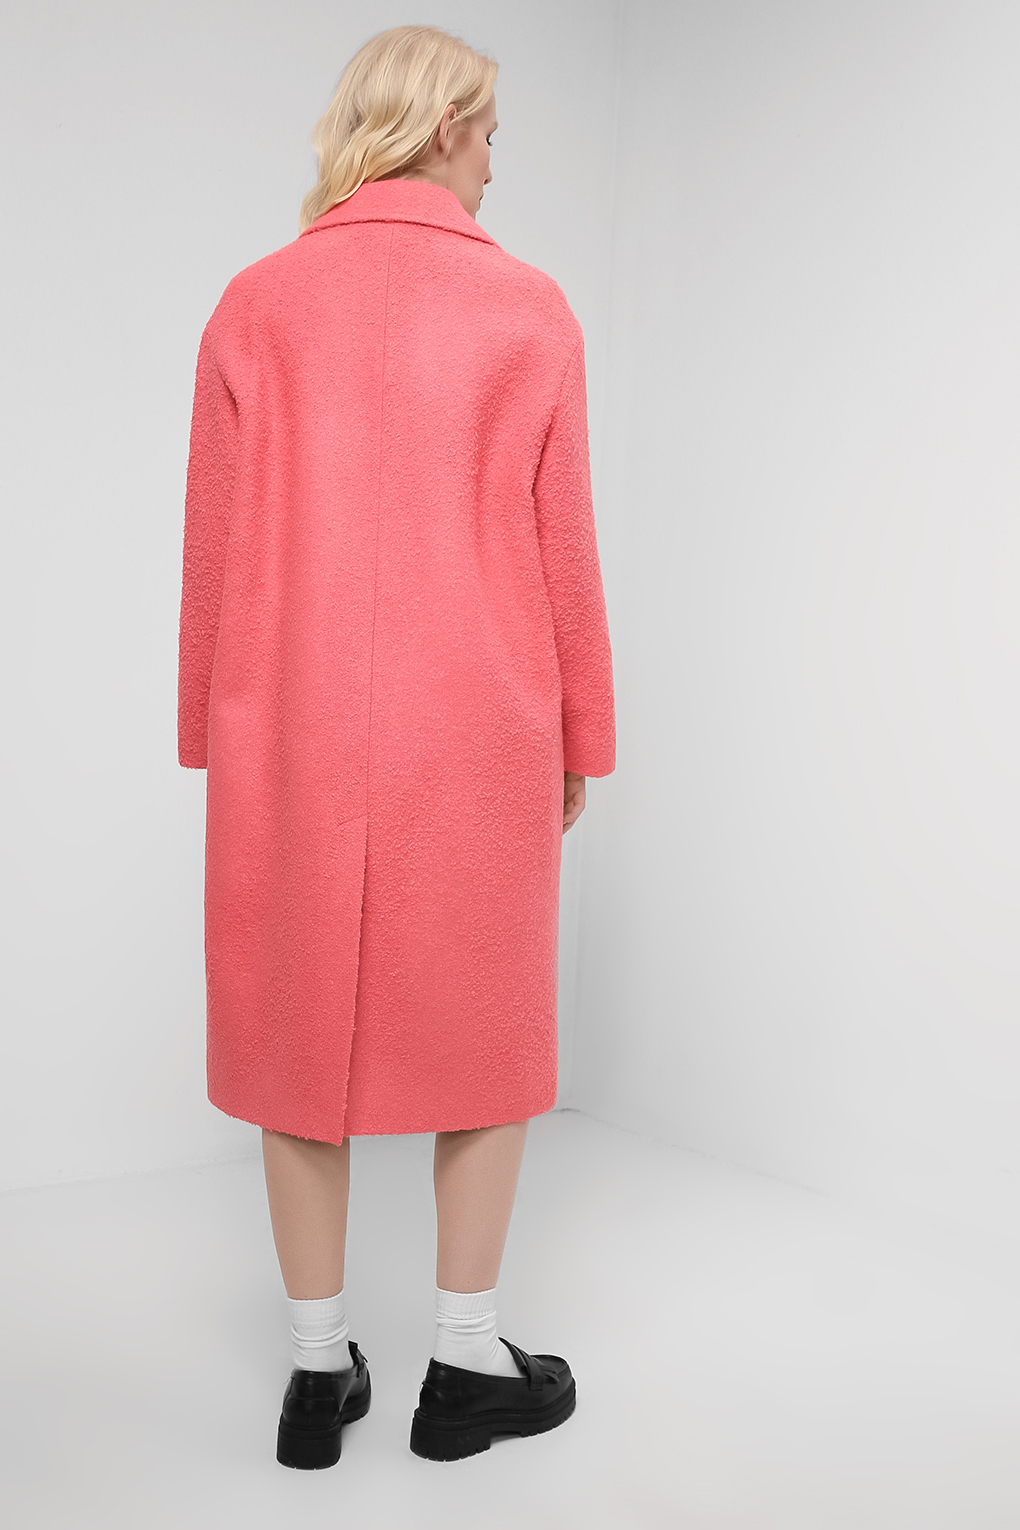 Пальто женское Belucci BL22016164 розовое 48 RU